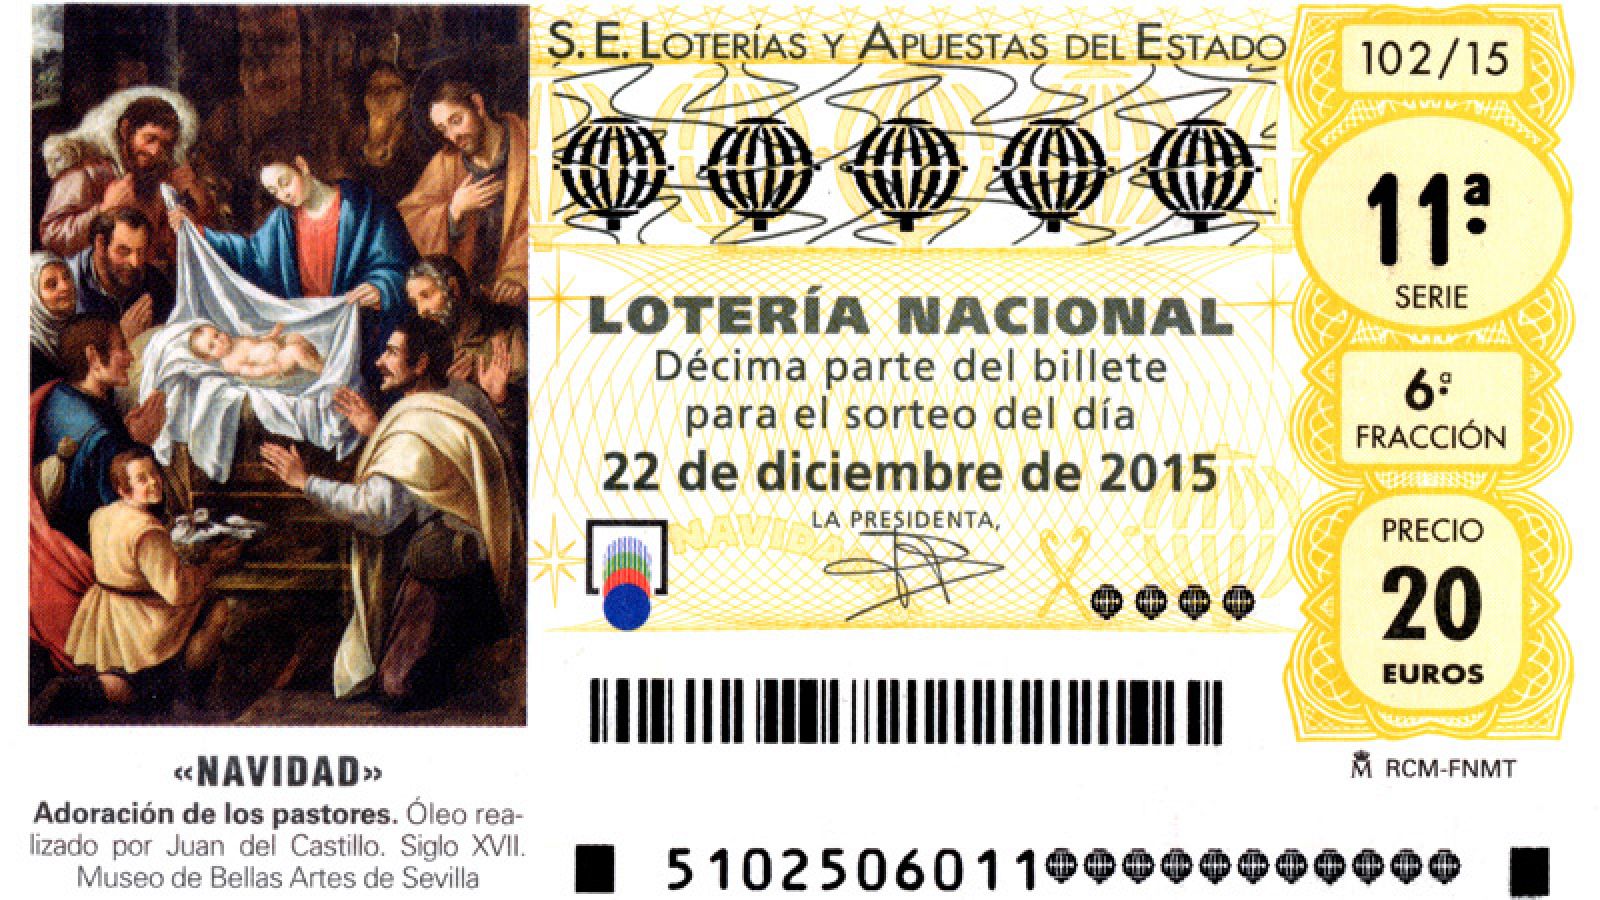 Los décimos aparecen ilustrados este año con el óleo de Juan del Castillo "Adoración de los pastores".